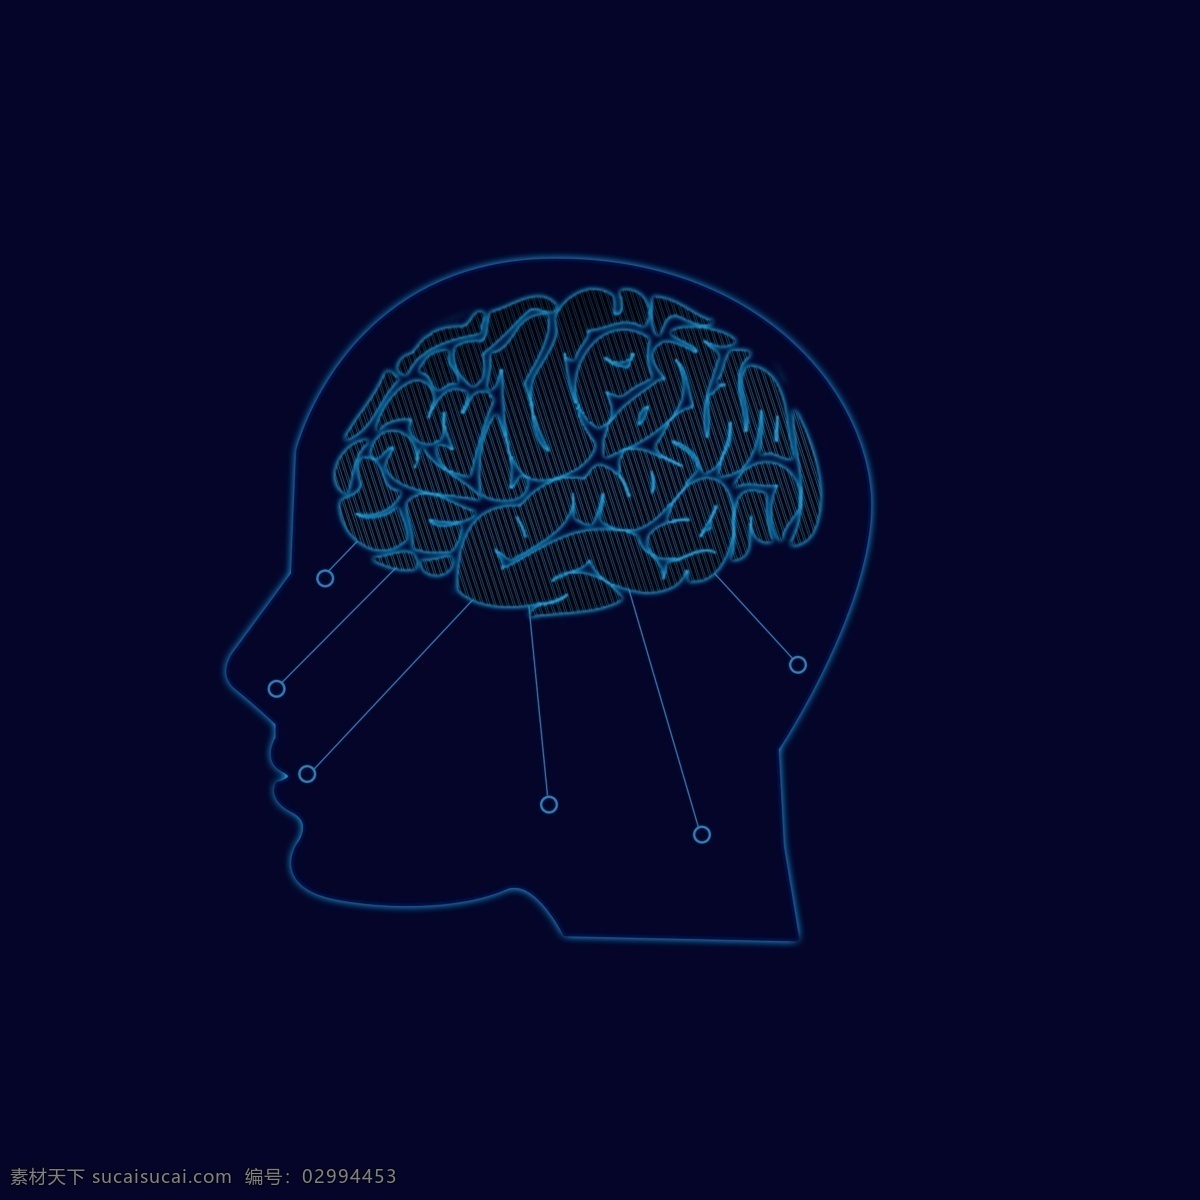 原创 科技 人工智能 大脑 元素 智慧 蓝色